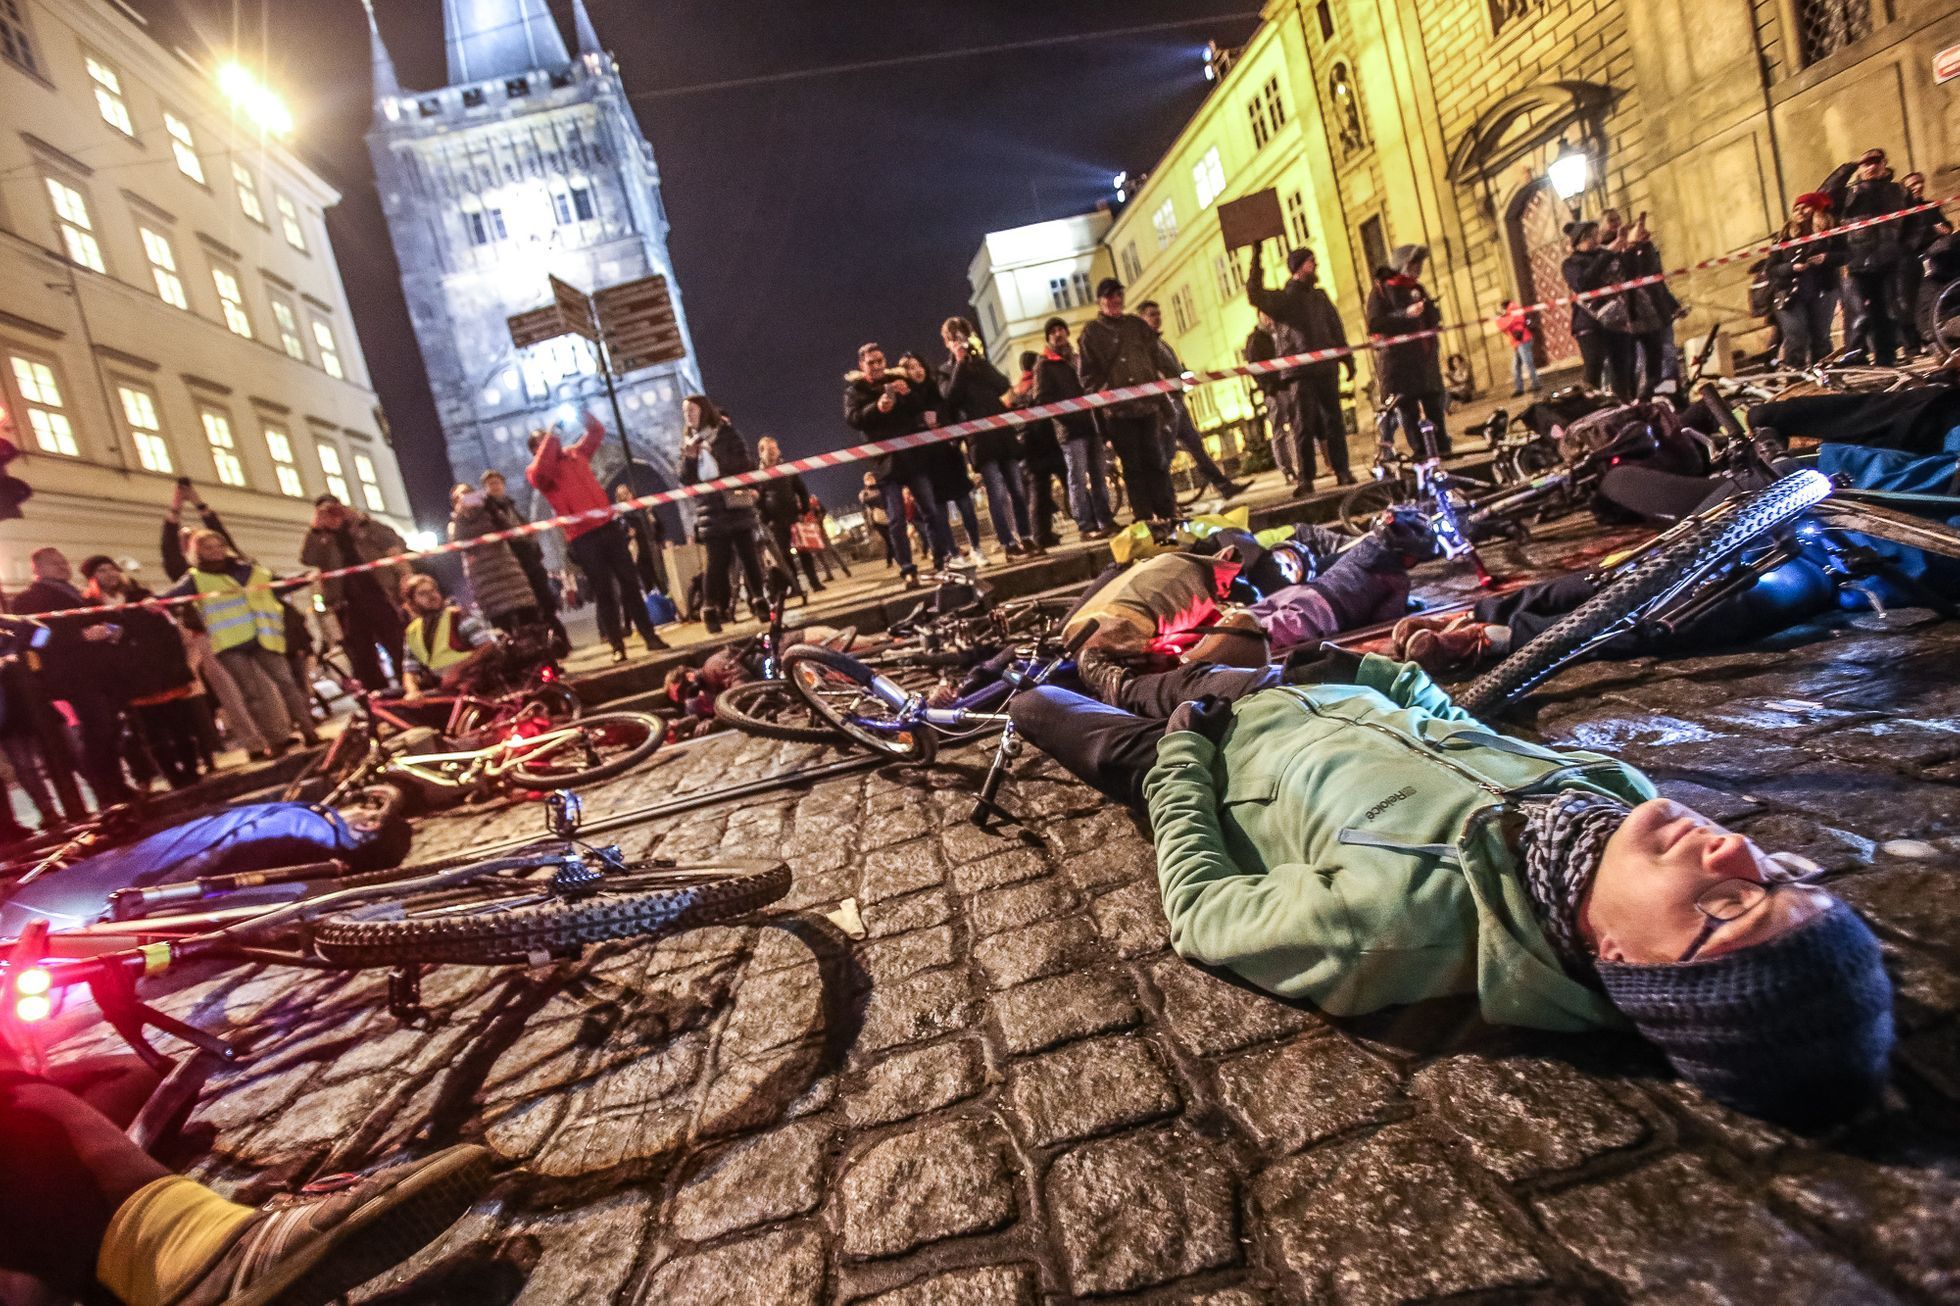 Cykloprotest proti omezení jízdě na kole na Praze 1, pořádal Auto*Mat